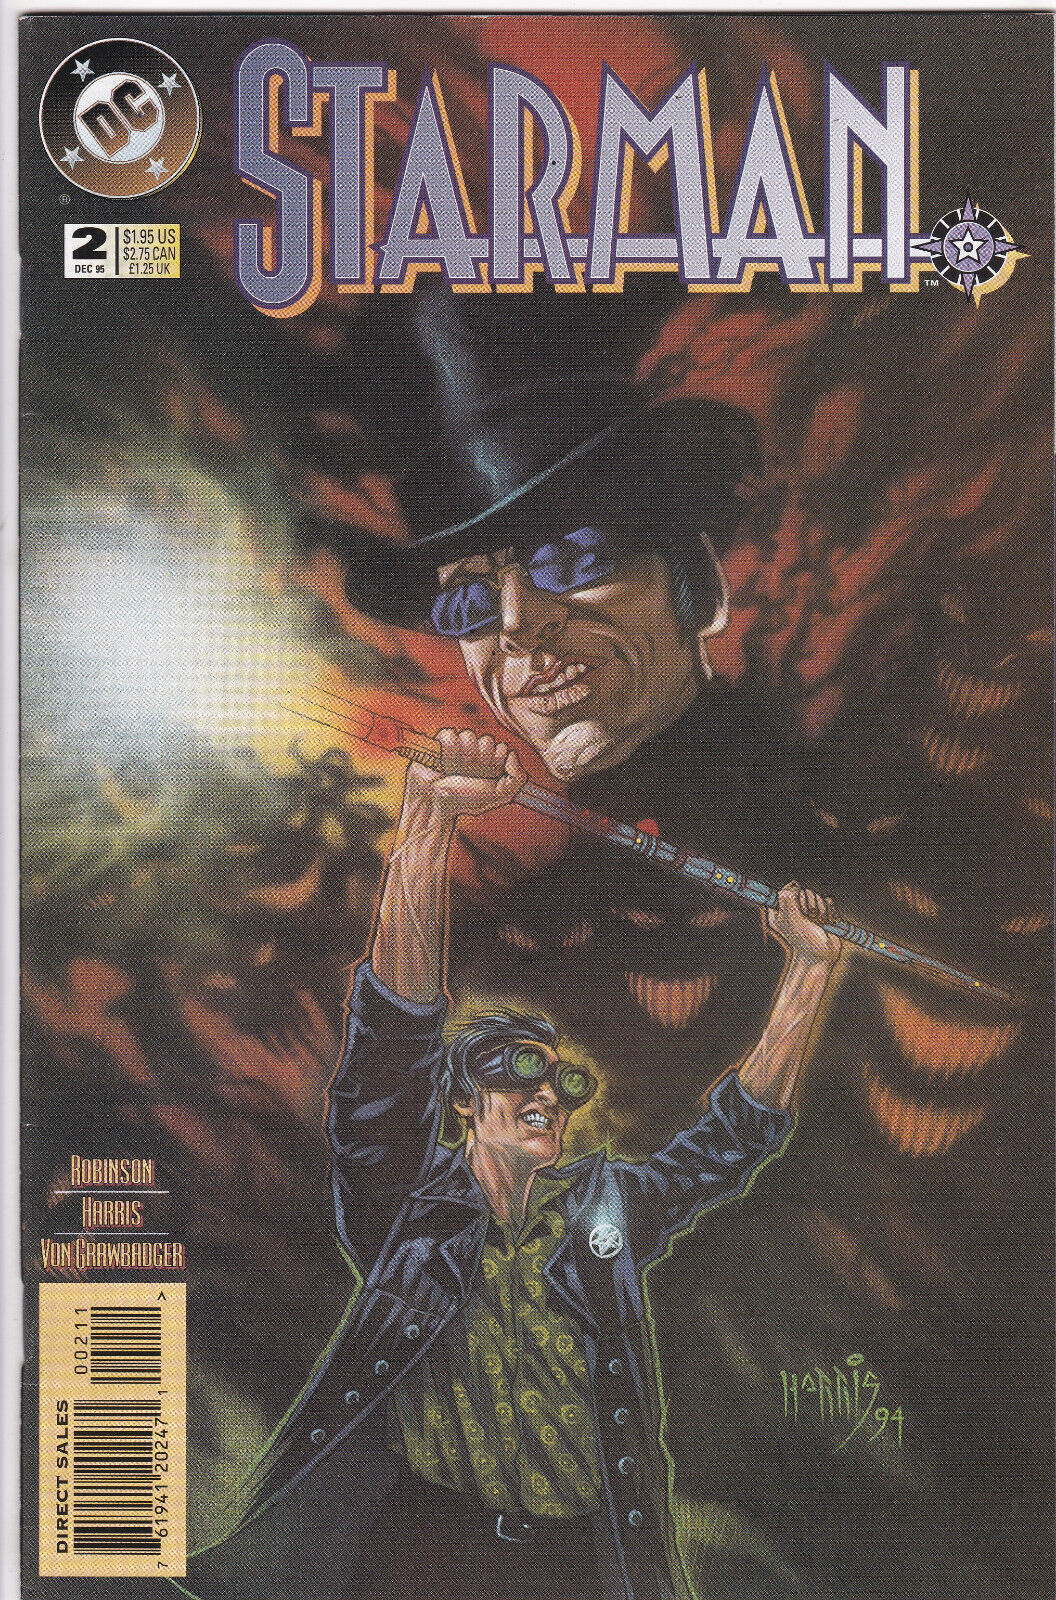 Starman #2, Vol. 2 (1994-2001, 2010) DC Comics, High Grade